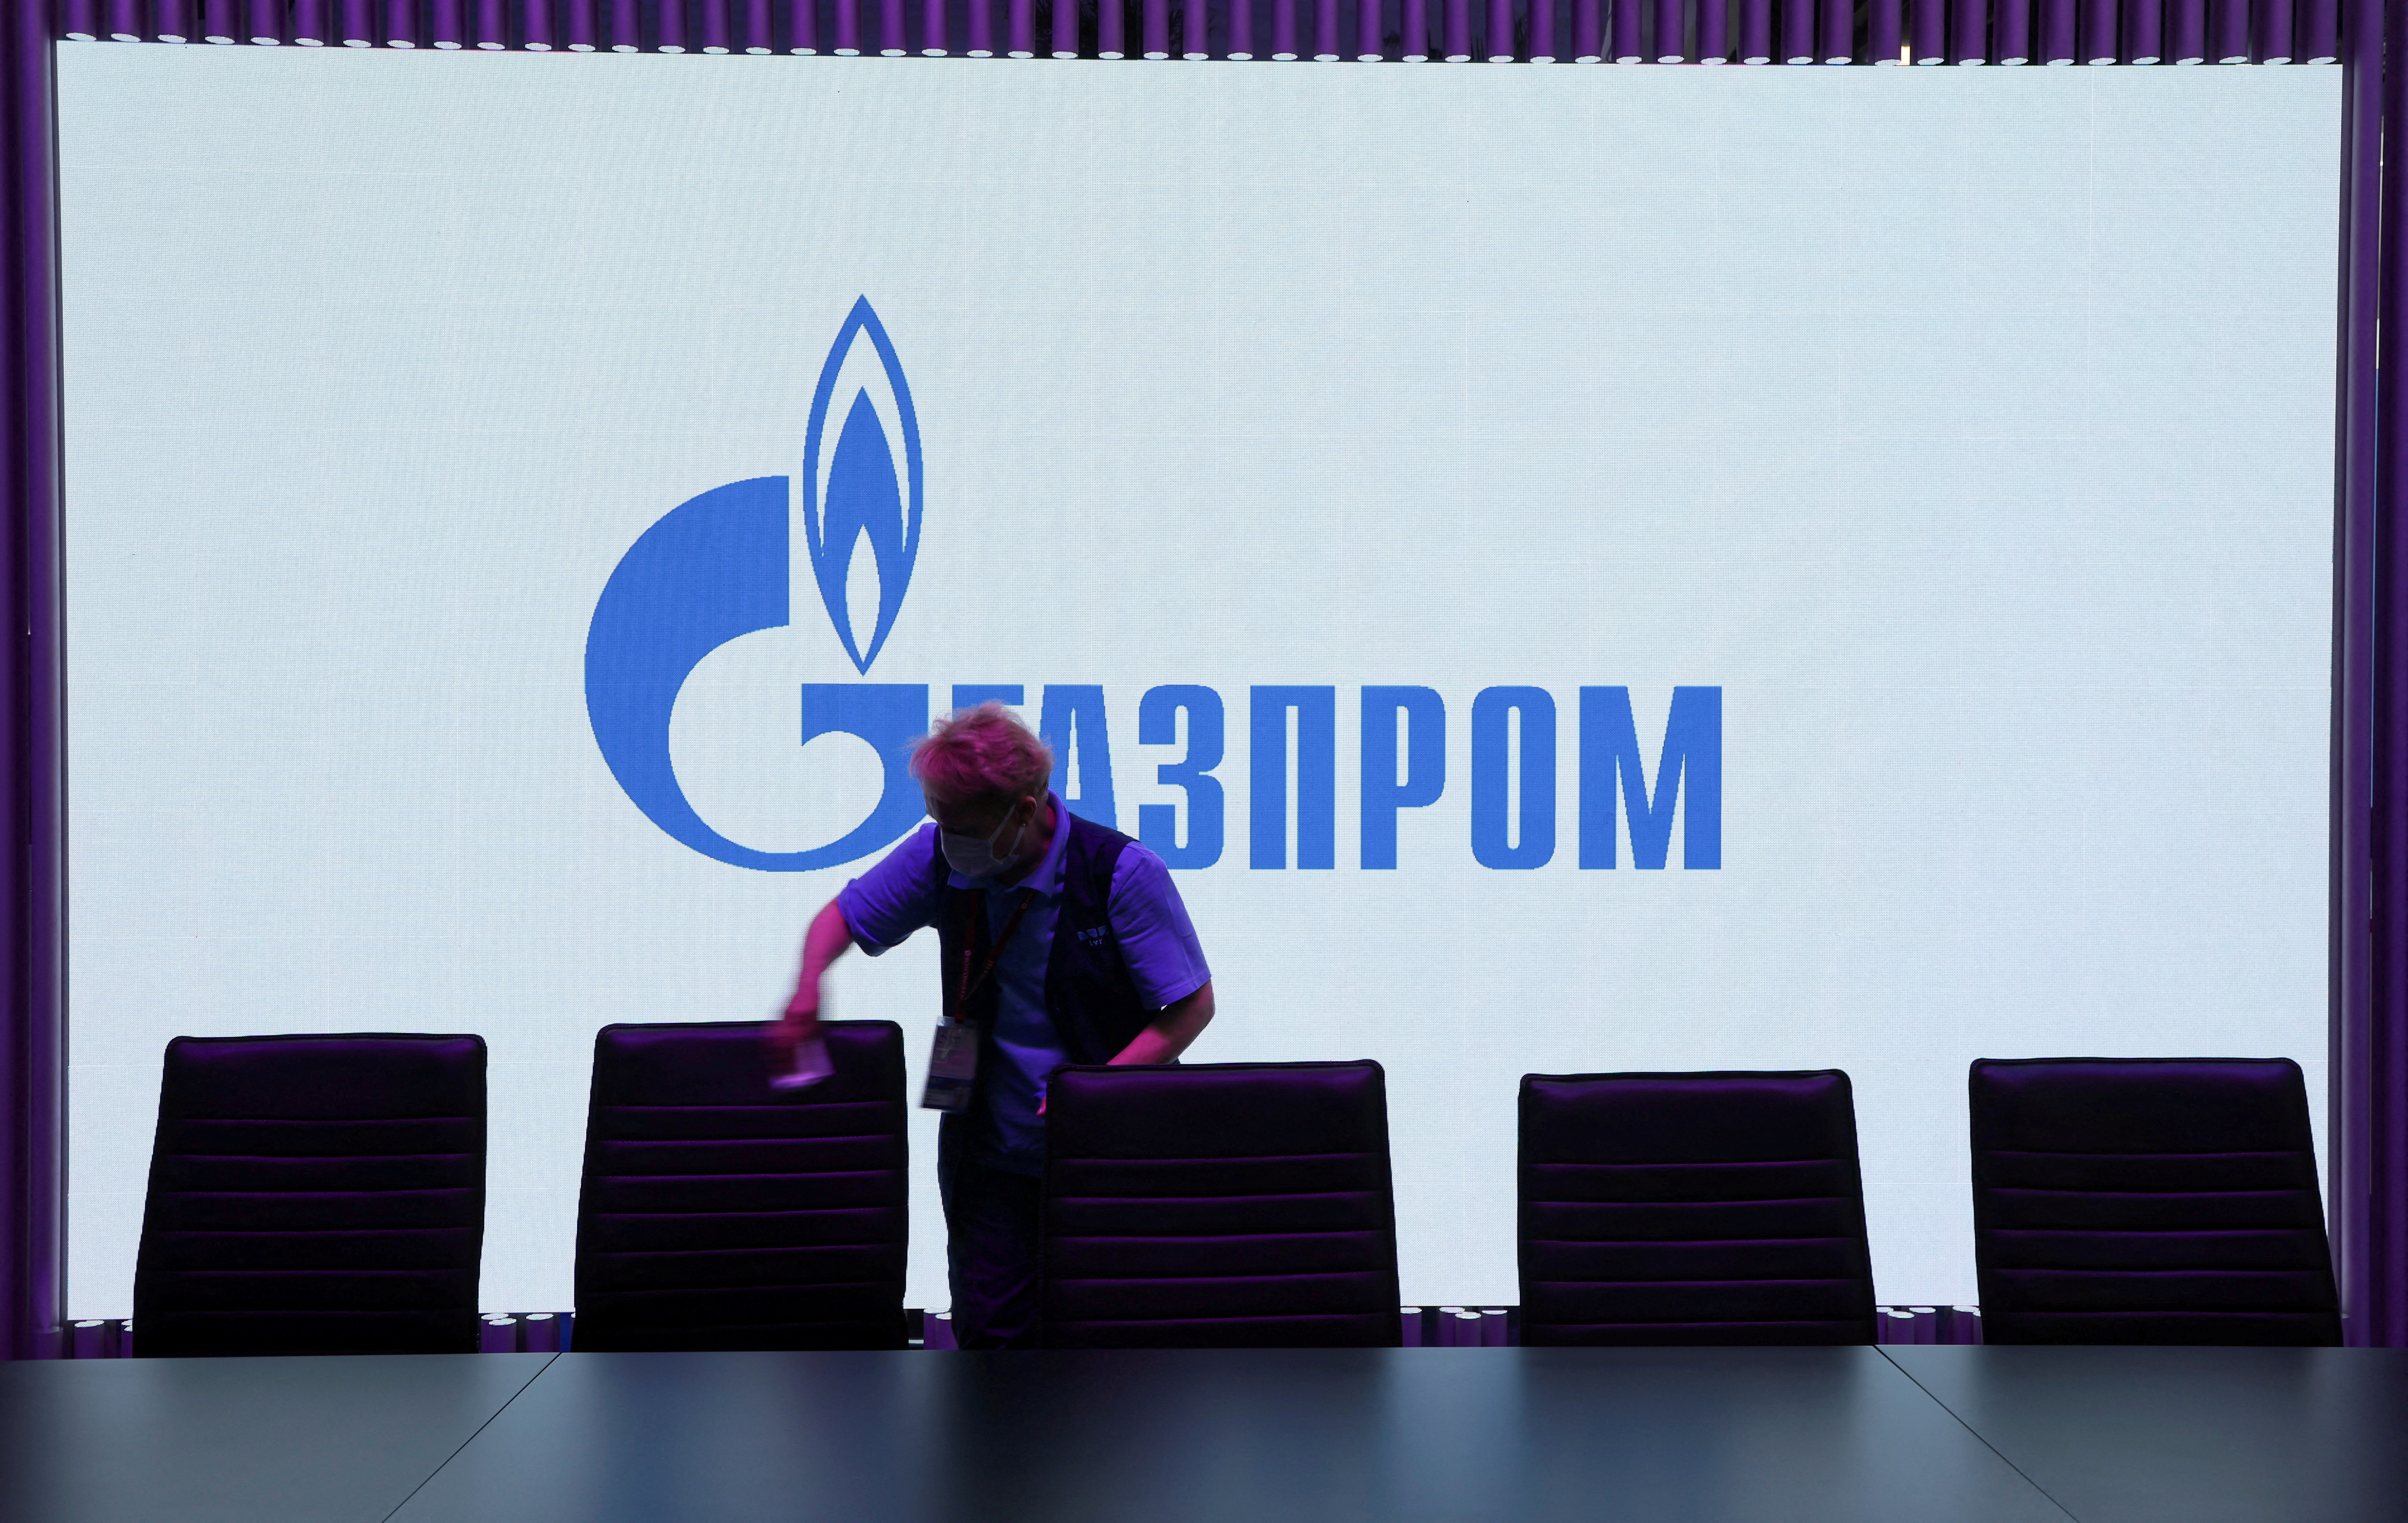 Gazprom logo displayed at St. Petersburg International Economic Forum (SPIEF)